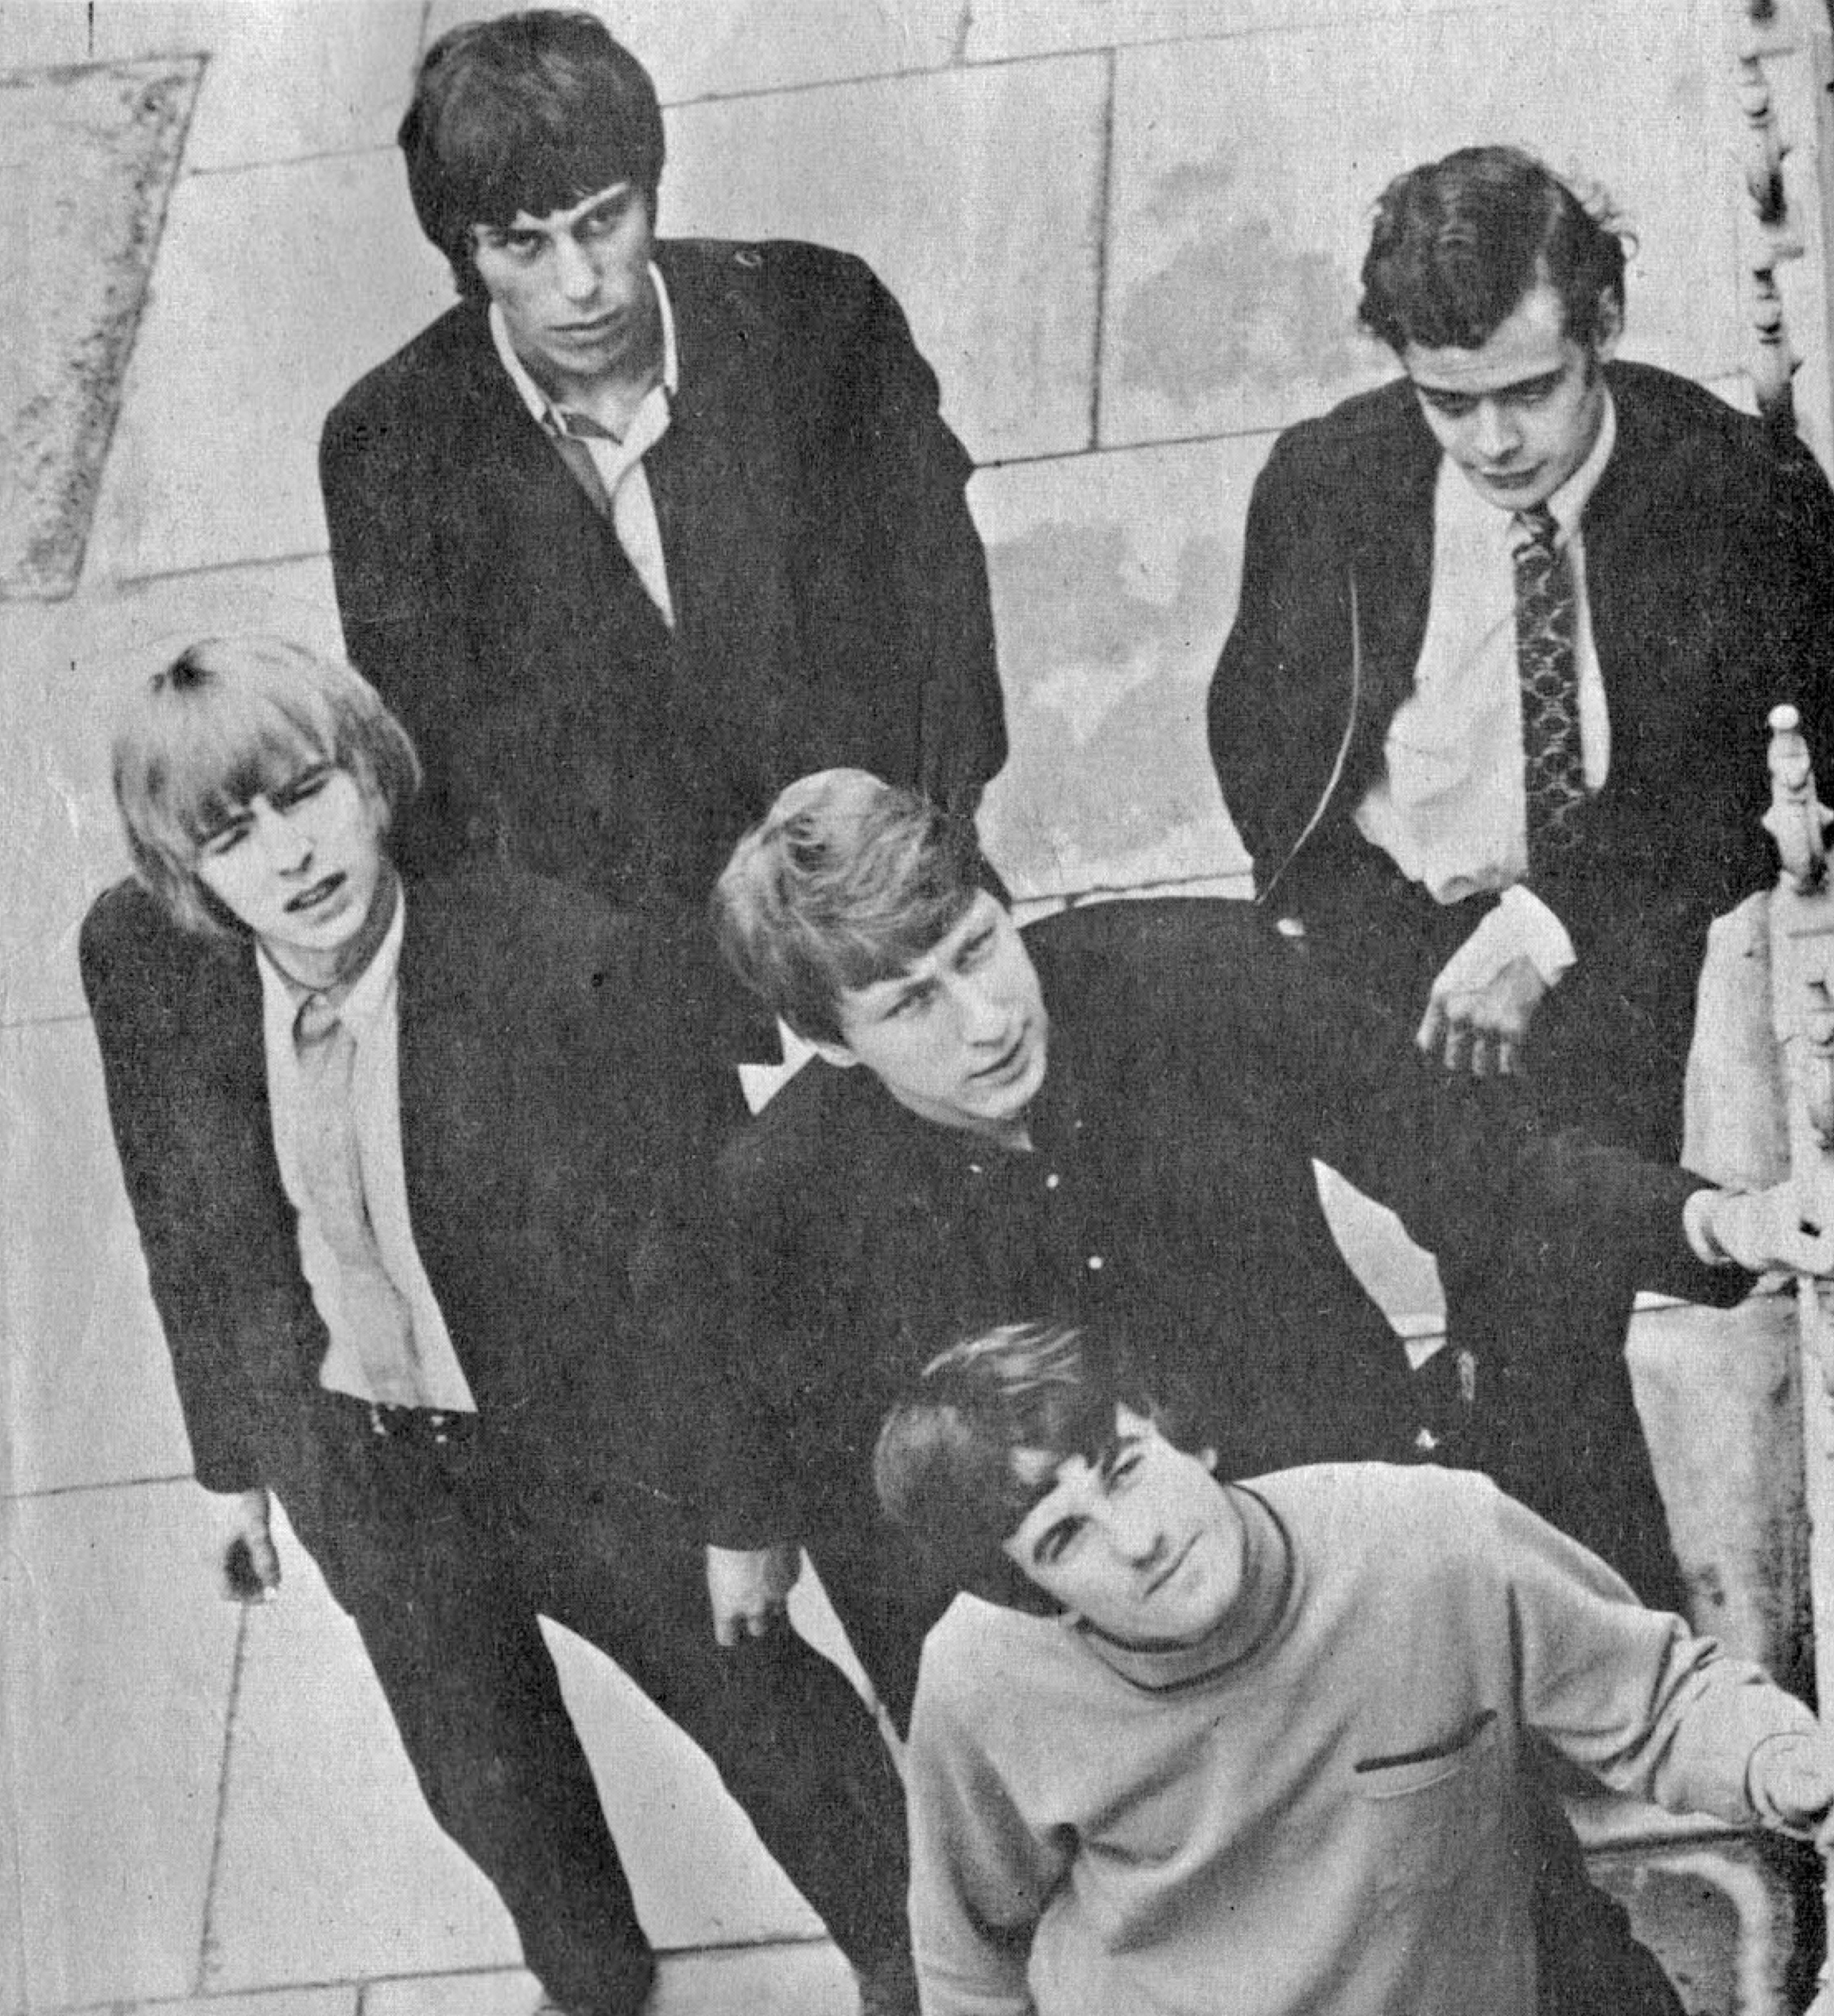 The Yardbirds，Jeff Beck / Yardbirds